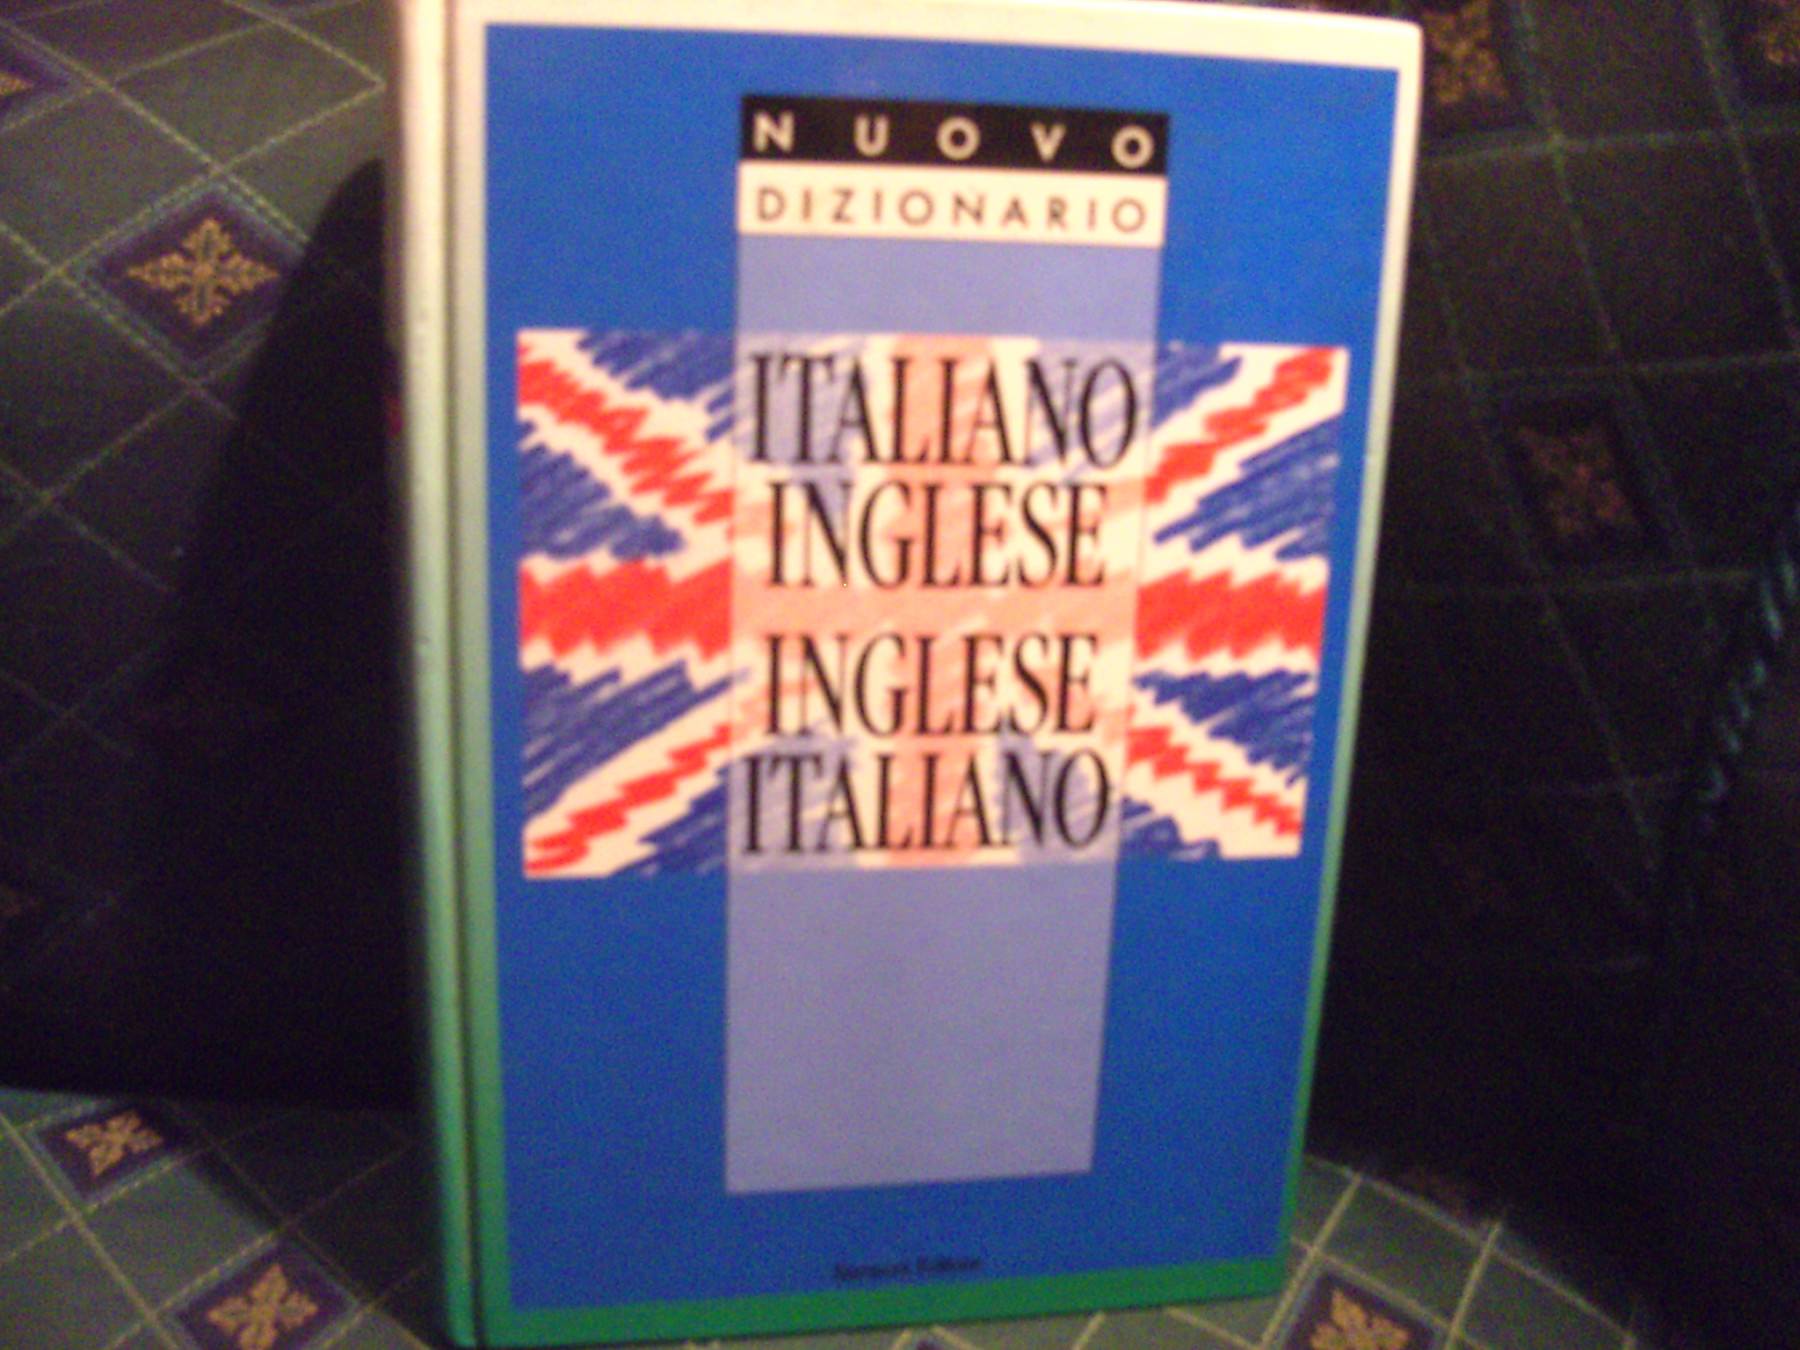 tapeta Najnovije vijesti prozor  Italiano inglese, italijansko engleski rečnik - Kupindo.com (9859020)